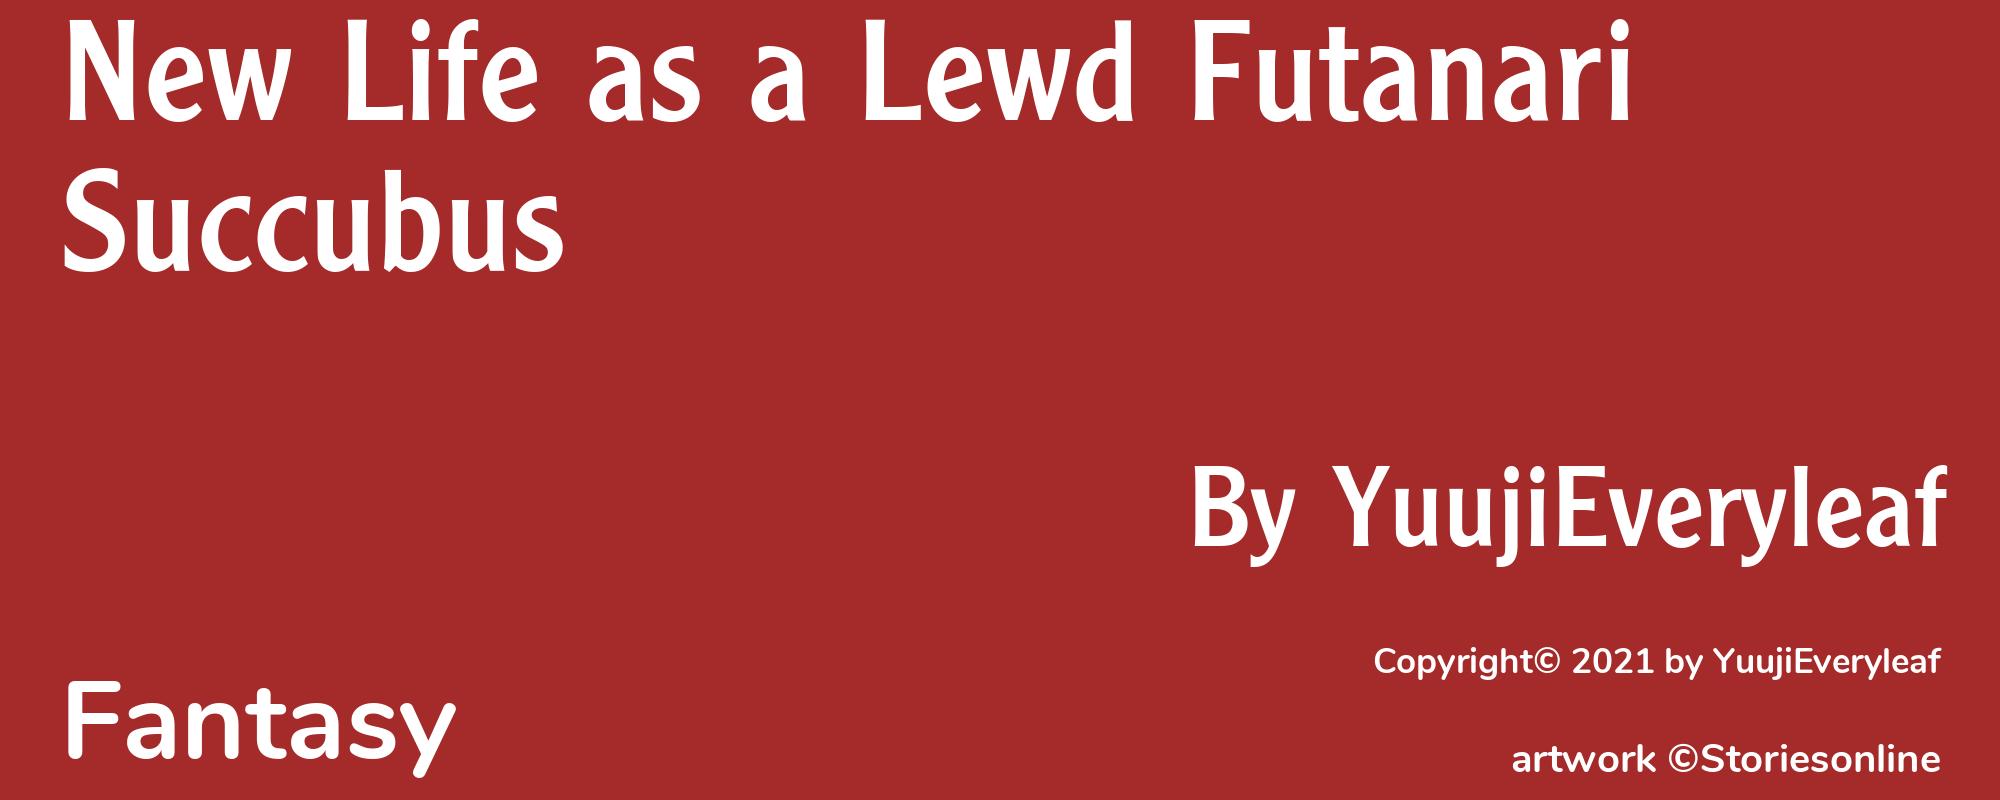 New Life as a Lewd Futanari Succubus - Cover